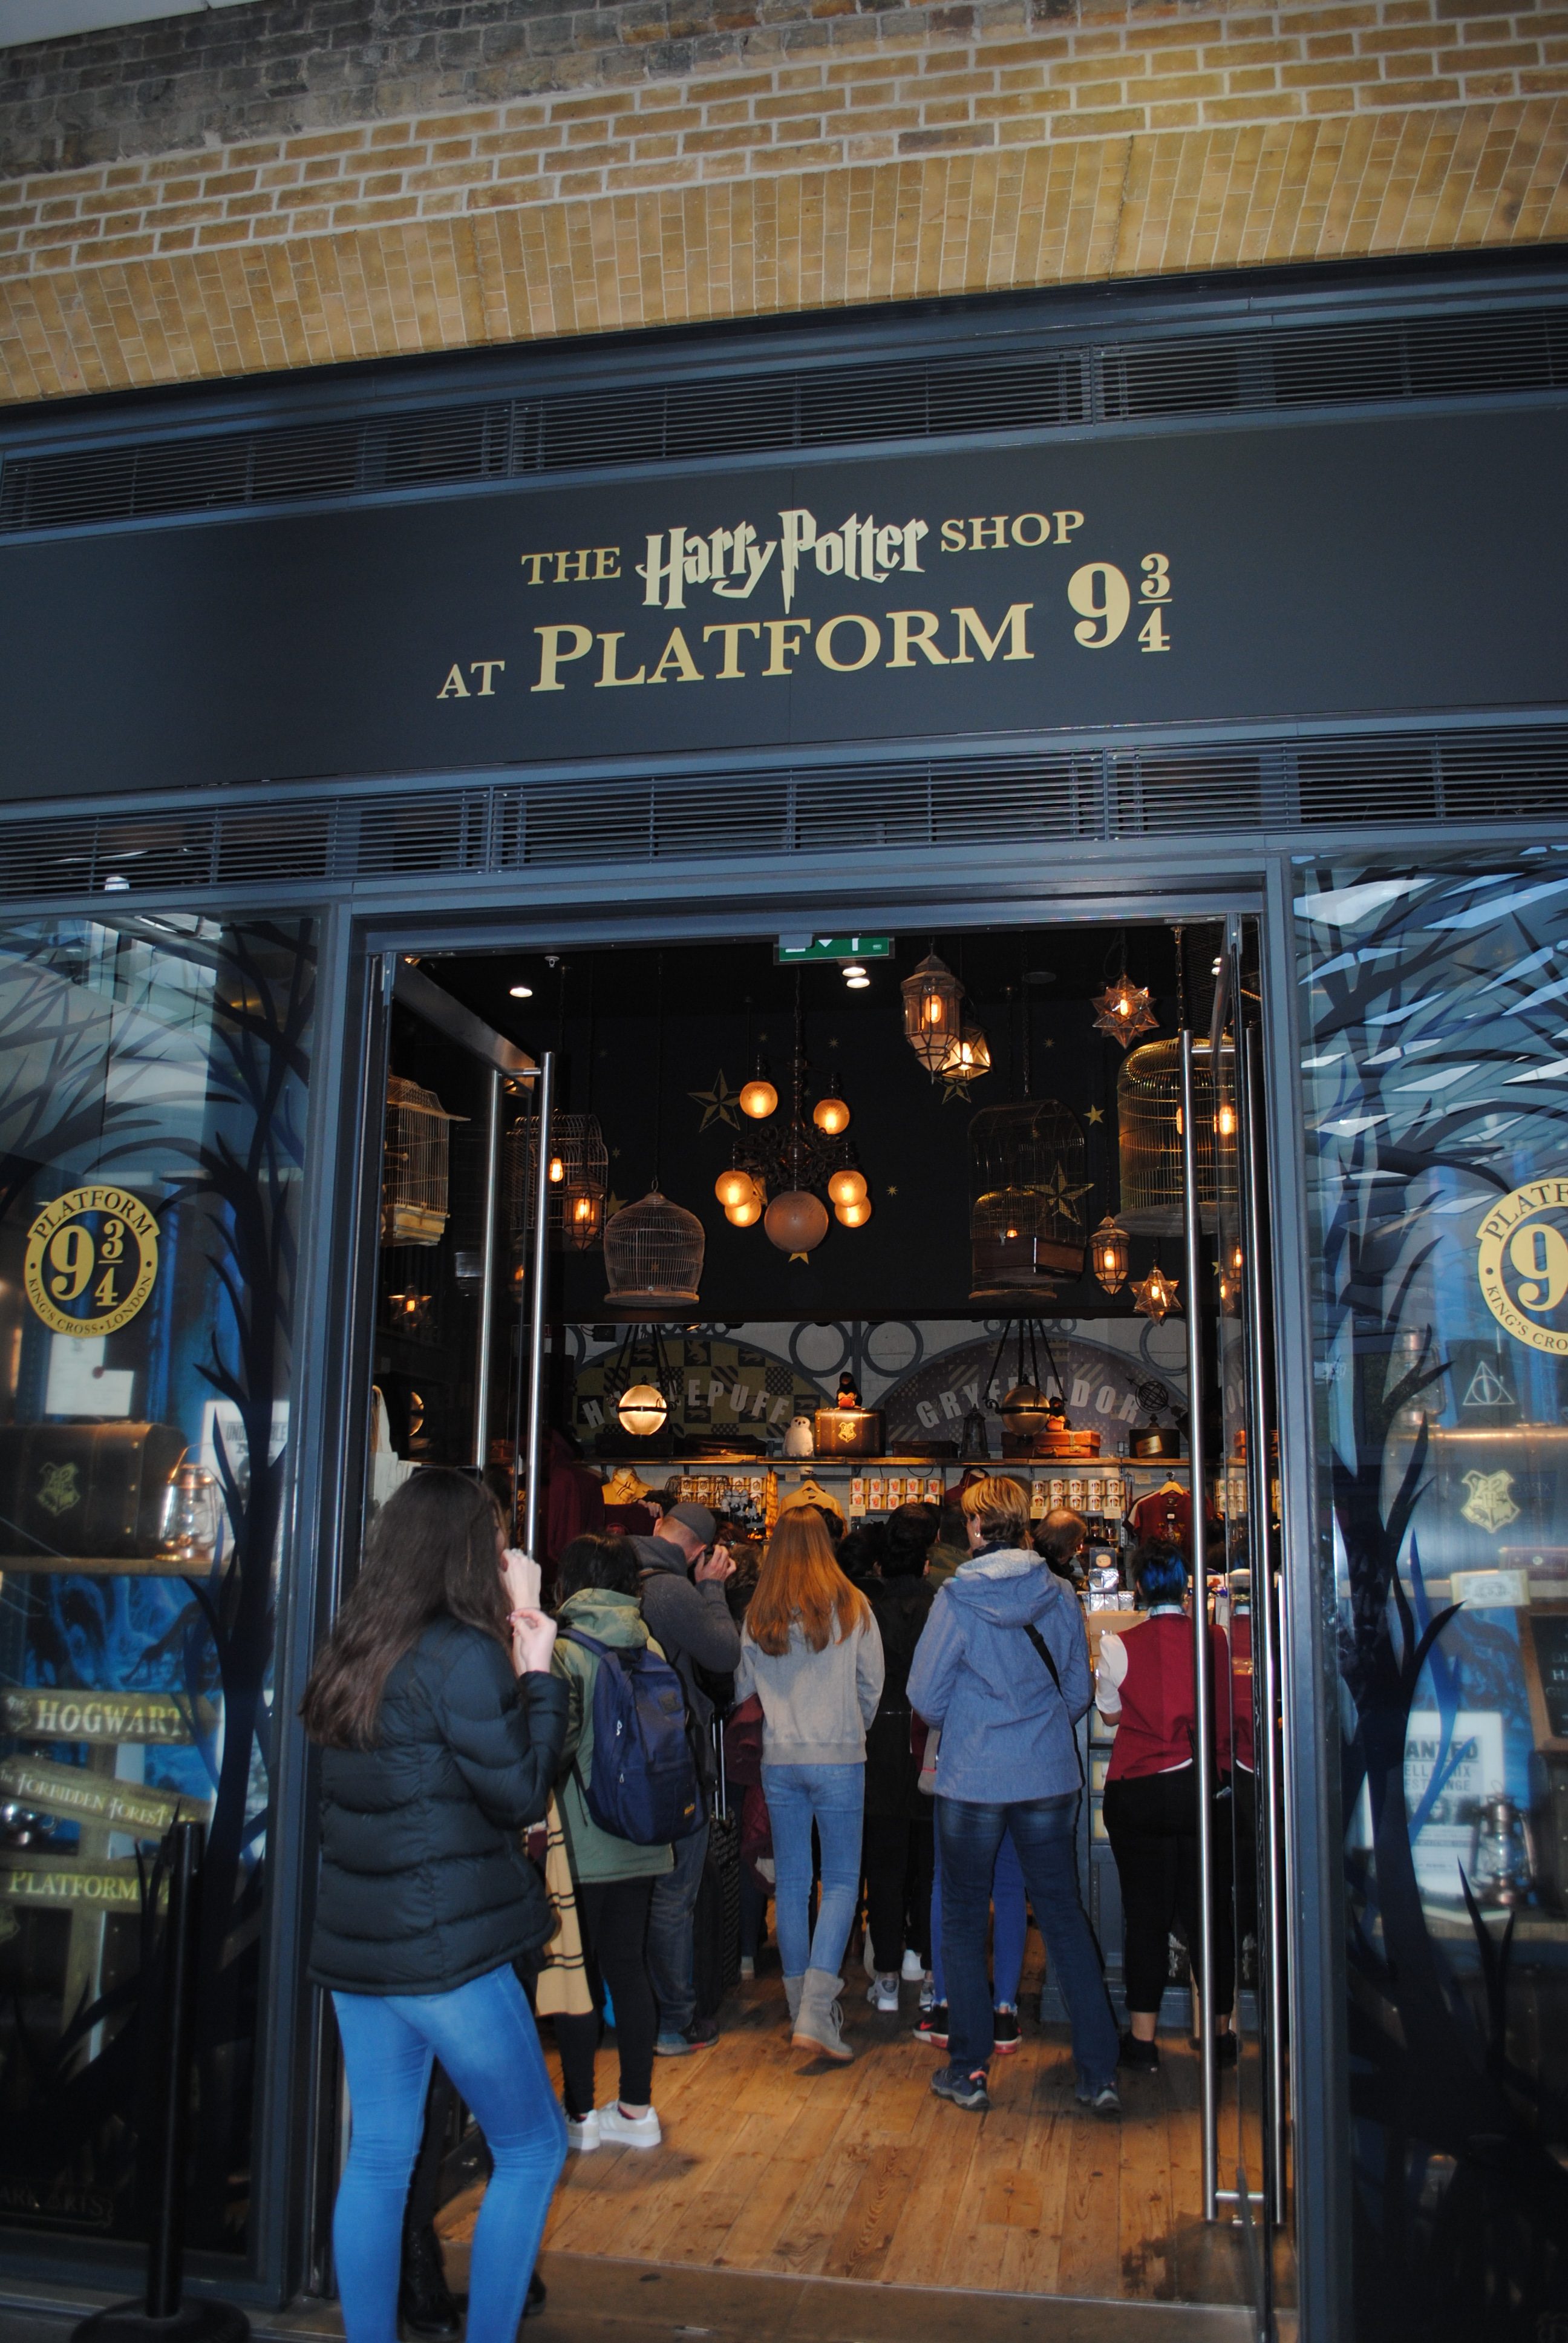 Harry Potter shop at Platform 9 3/4 in London